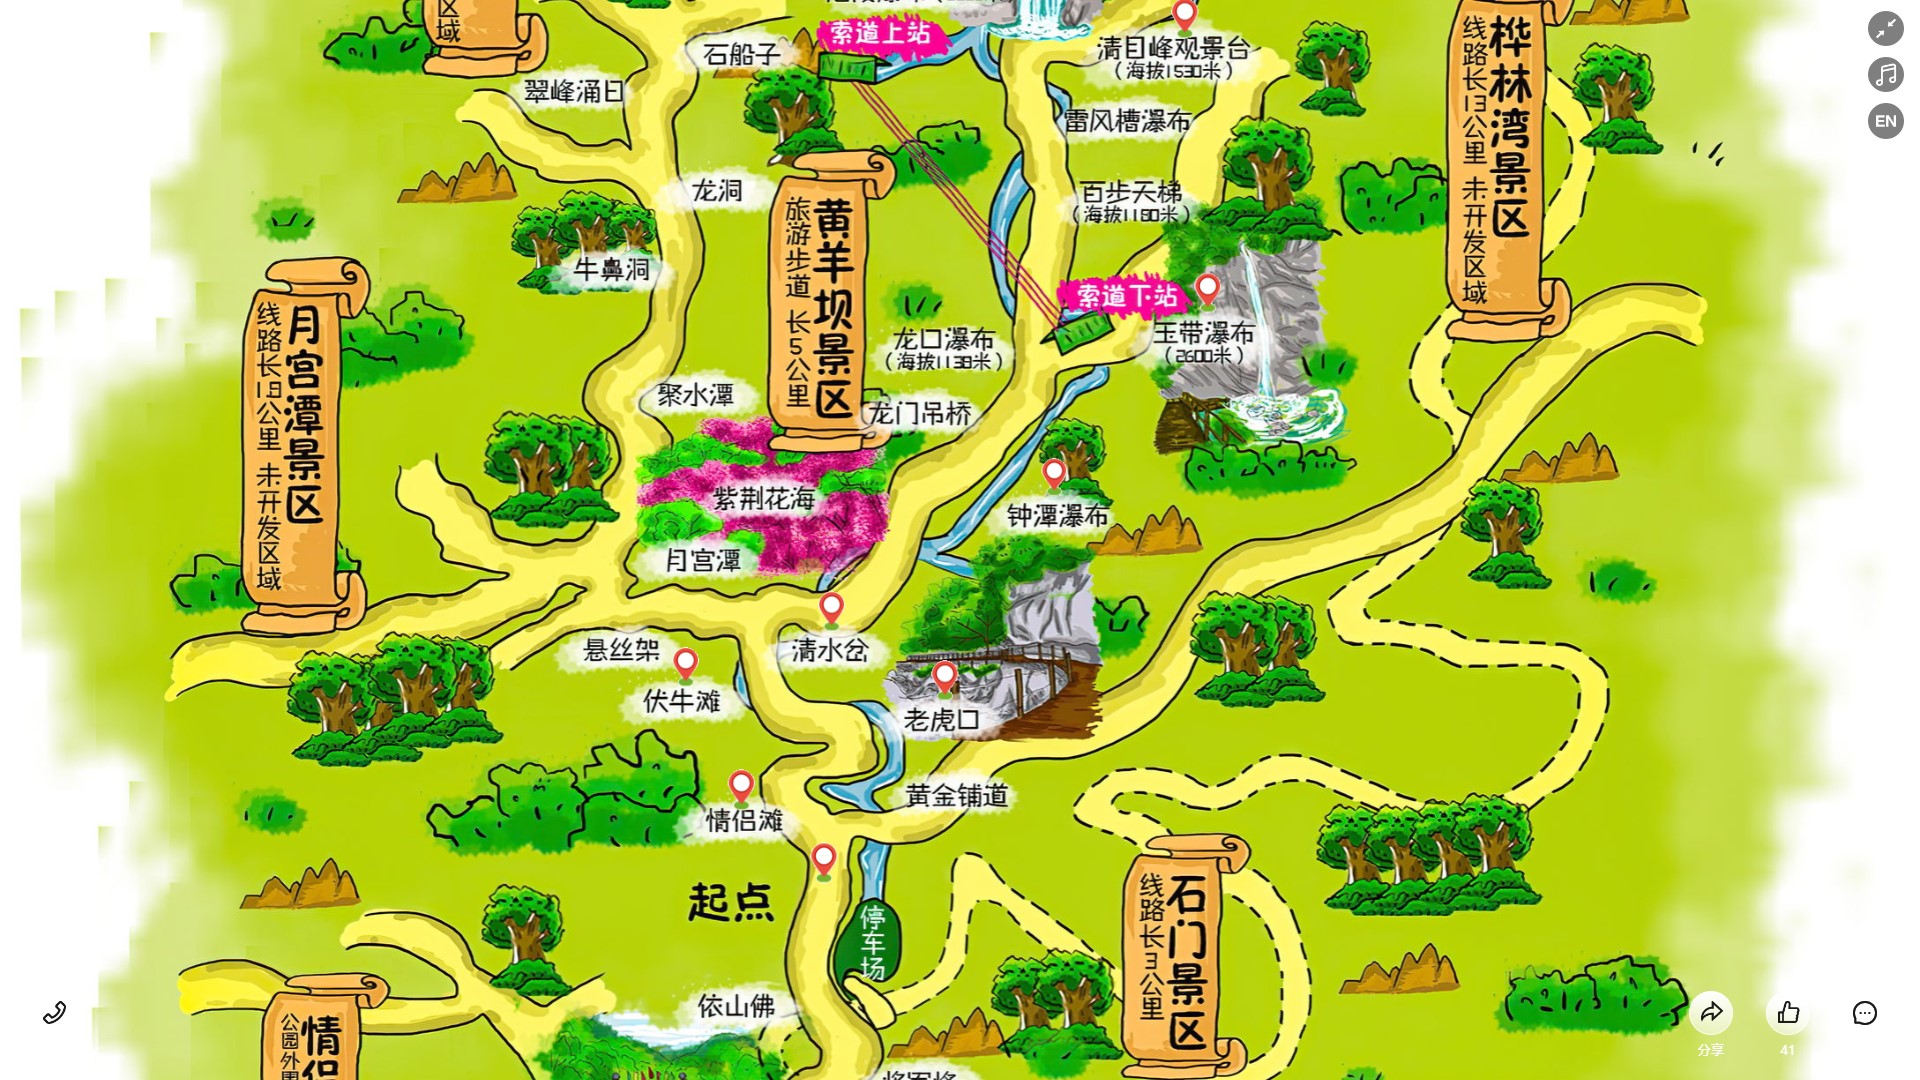 陕州景区导览系统